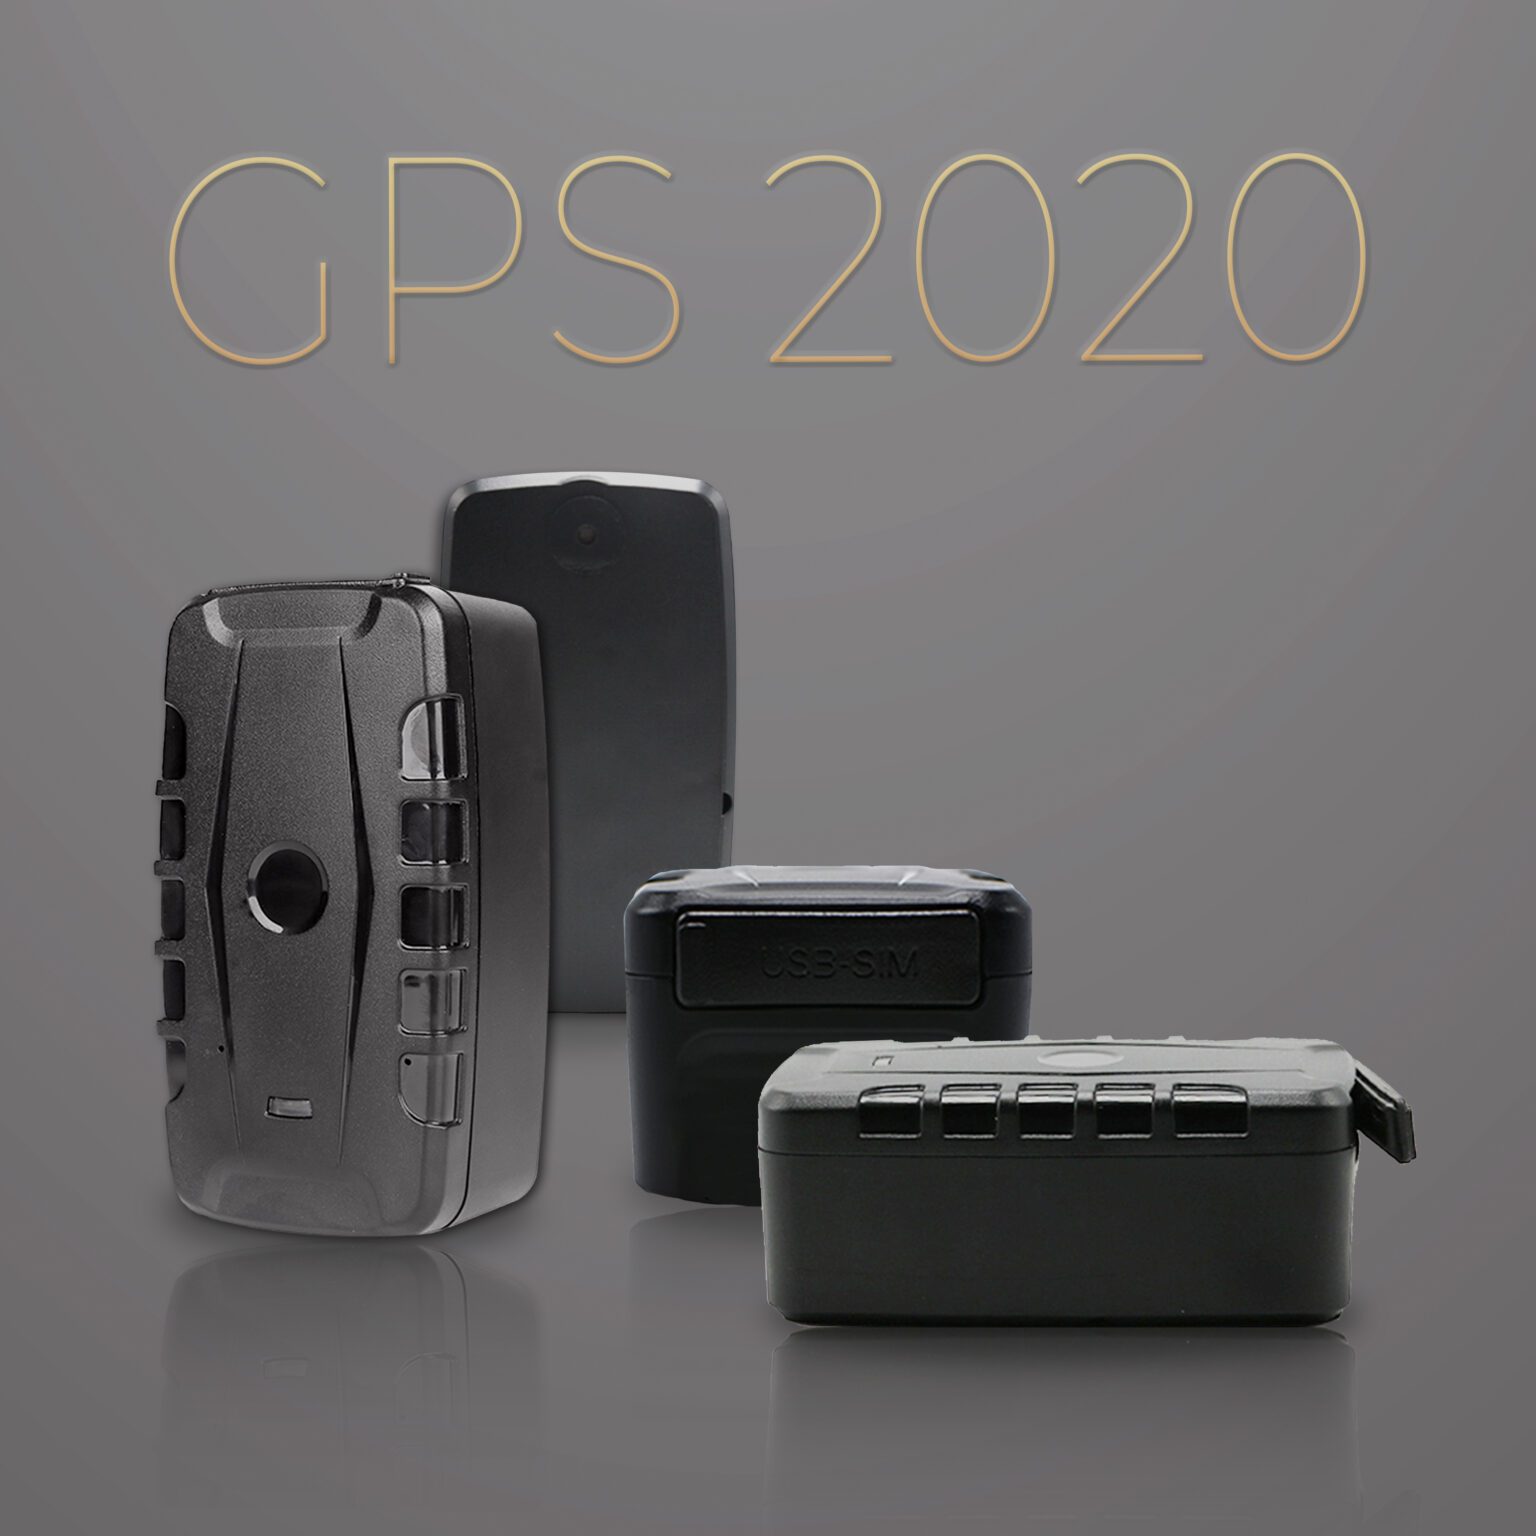 GPS 2020 Geraet uebersicht 1536x1536 - GPS-2020-Geraet-uebersicht